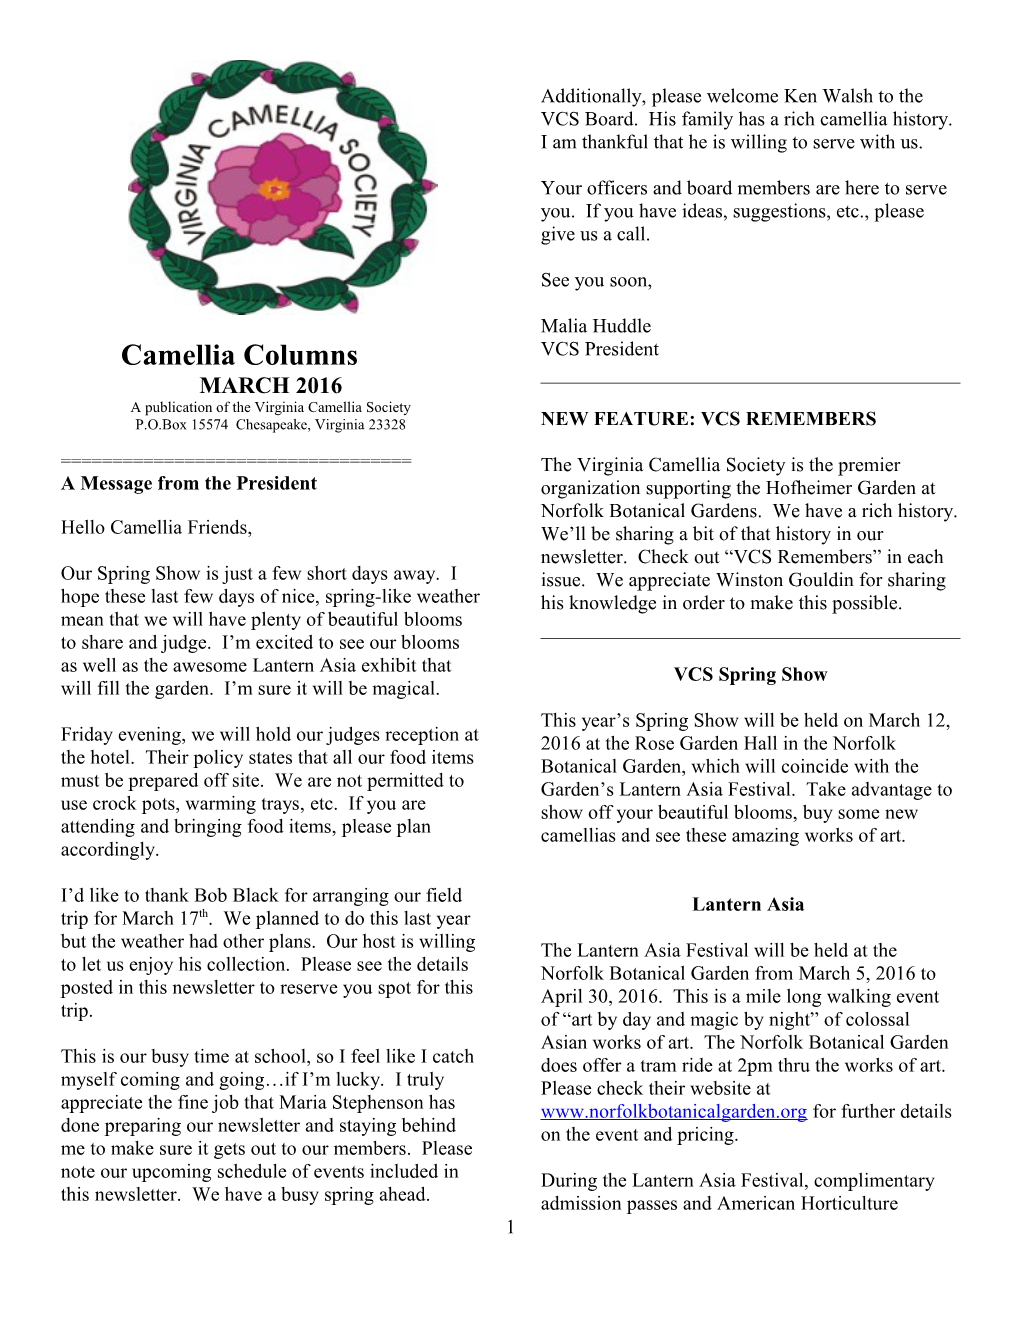 A Publication of Thevirginia Camellia Society